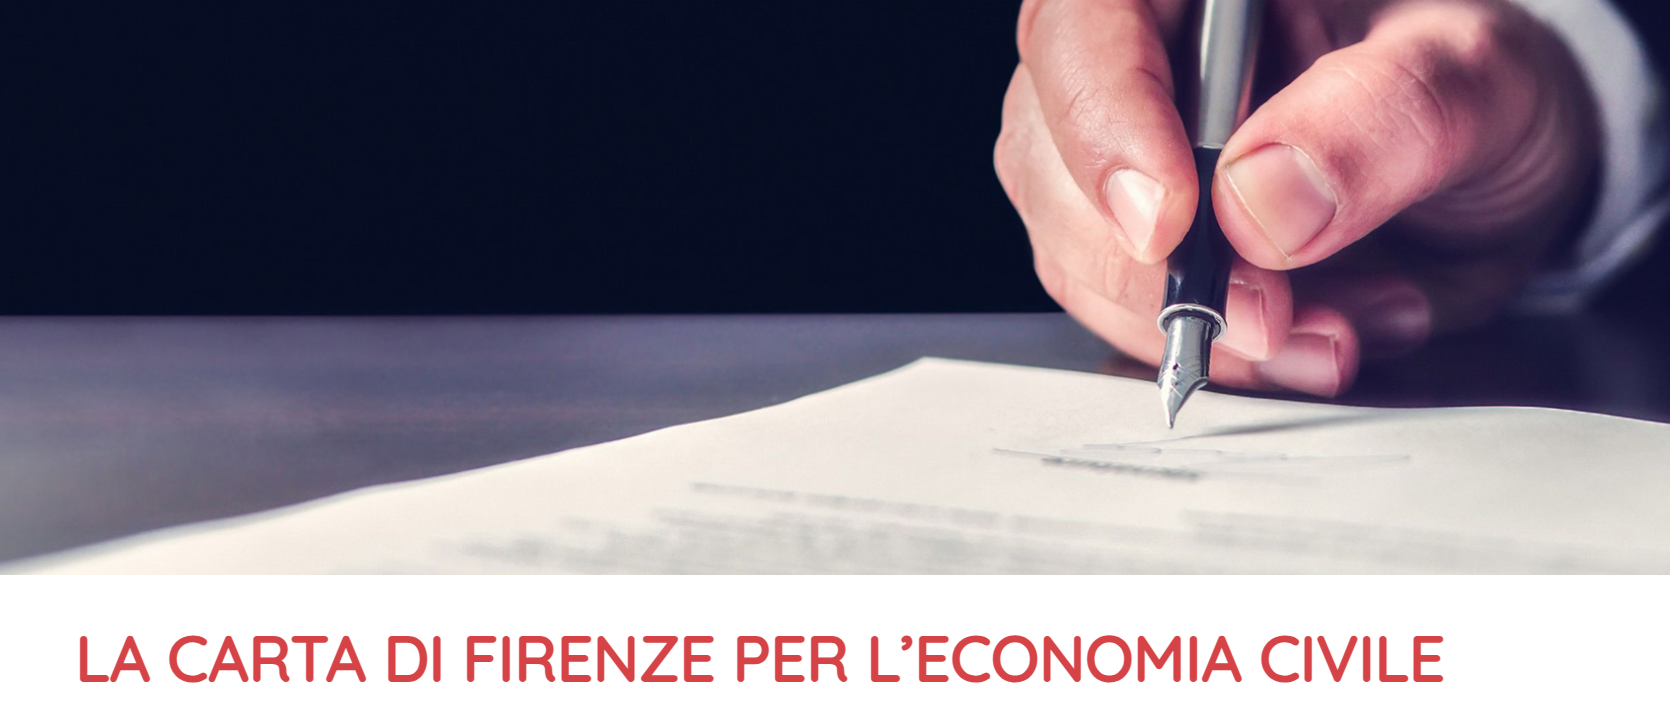 La carta di Firenze per l’economia civile